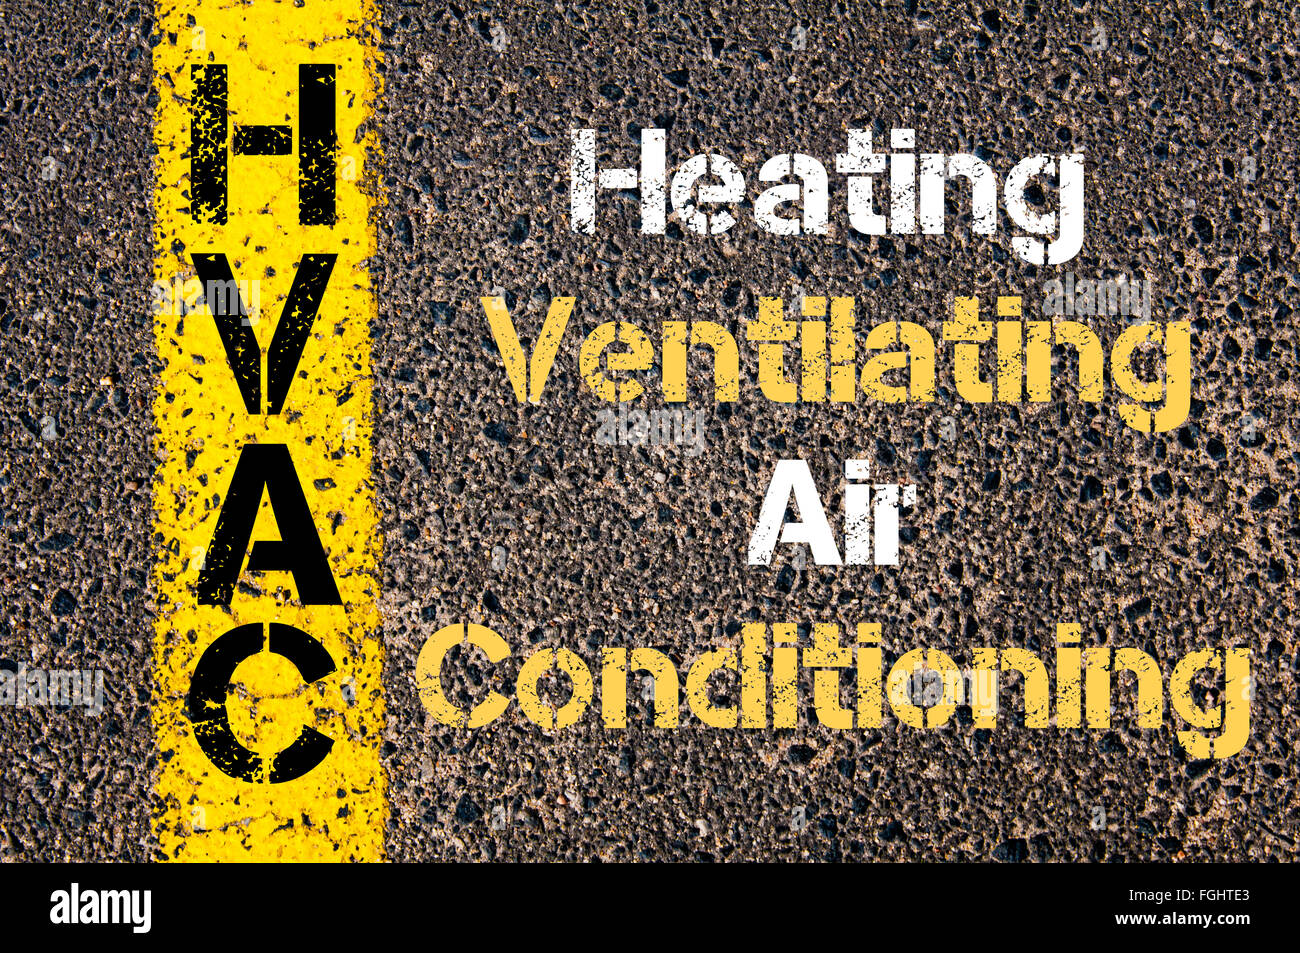 Konzept-Bild des Business Abkürzung HVAC als Heizung Lüftung Klimaanlage  über Straße Markierung gelber Farbe geschrieben Stockfotografie - Alamy